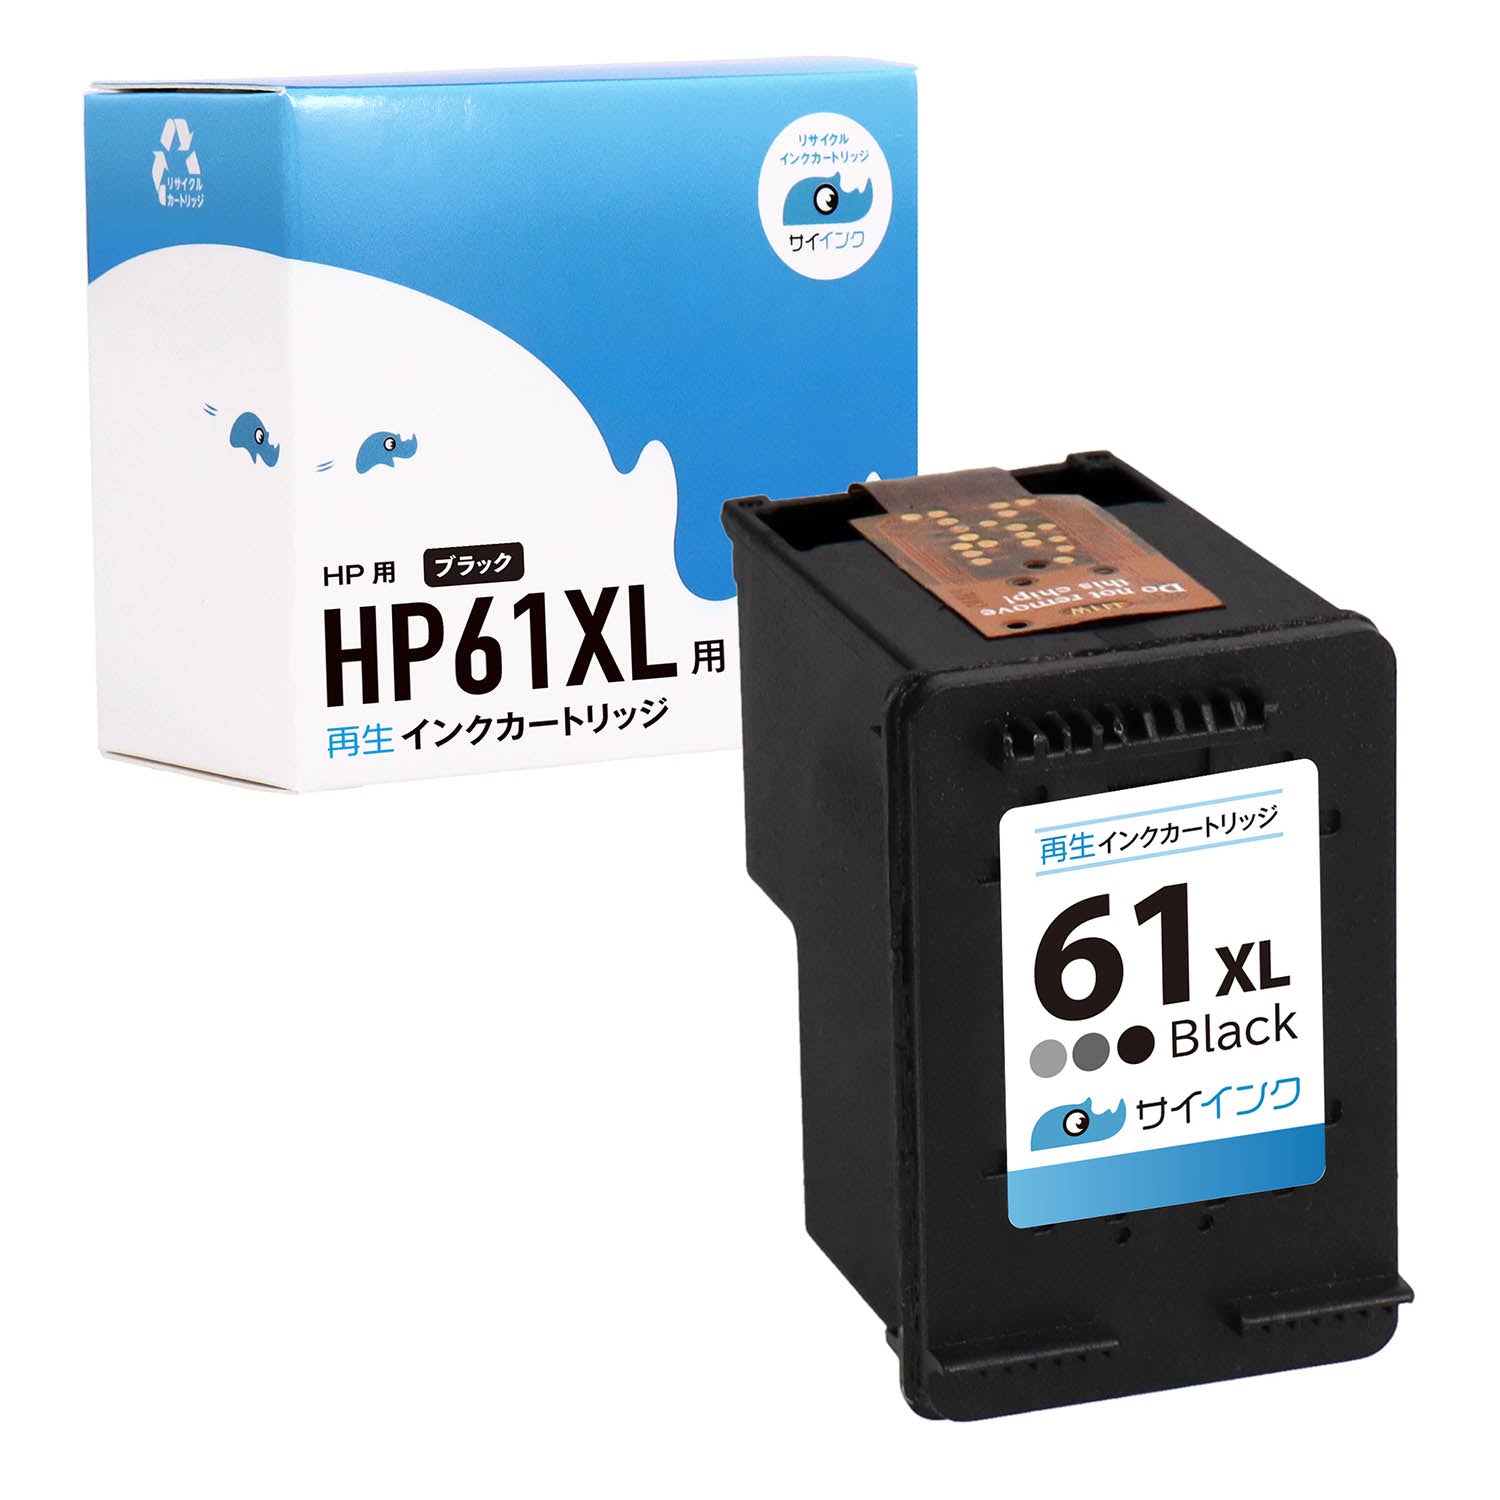 HP用 HP 61XL 再生インク ブラック 増量版